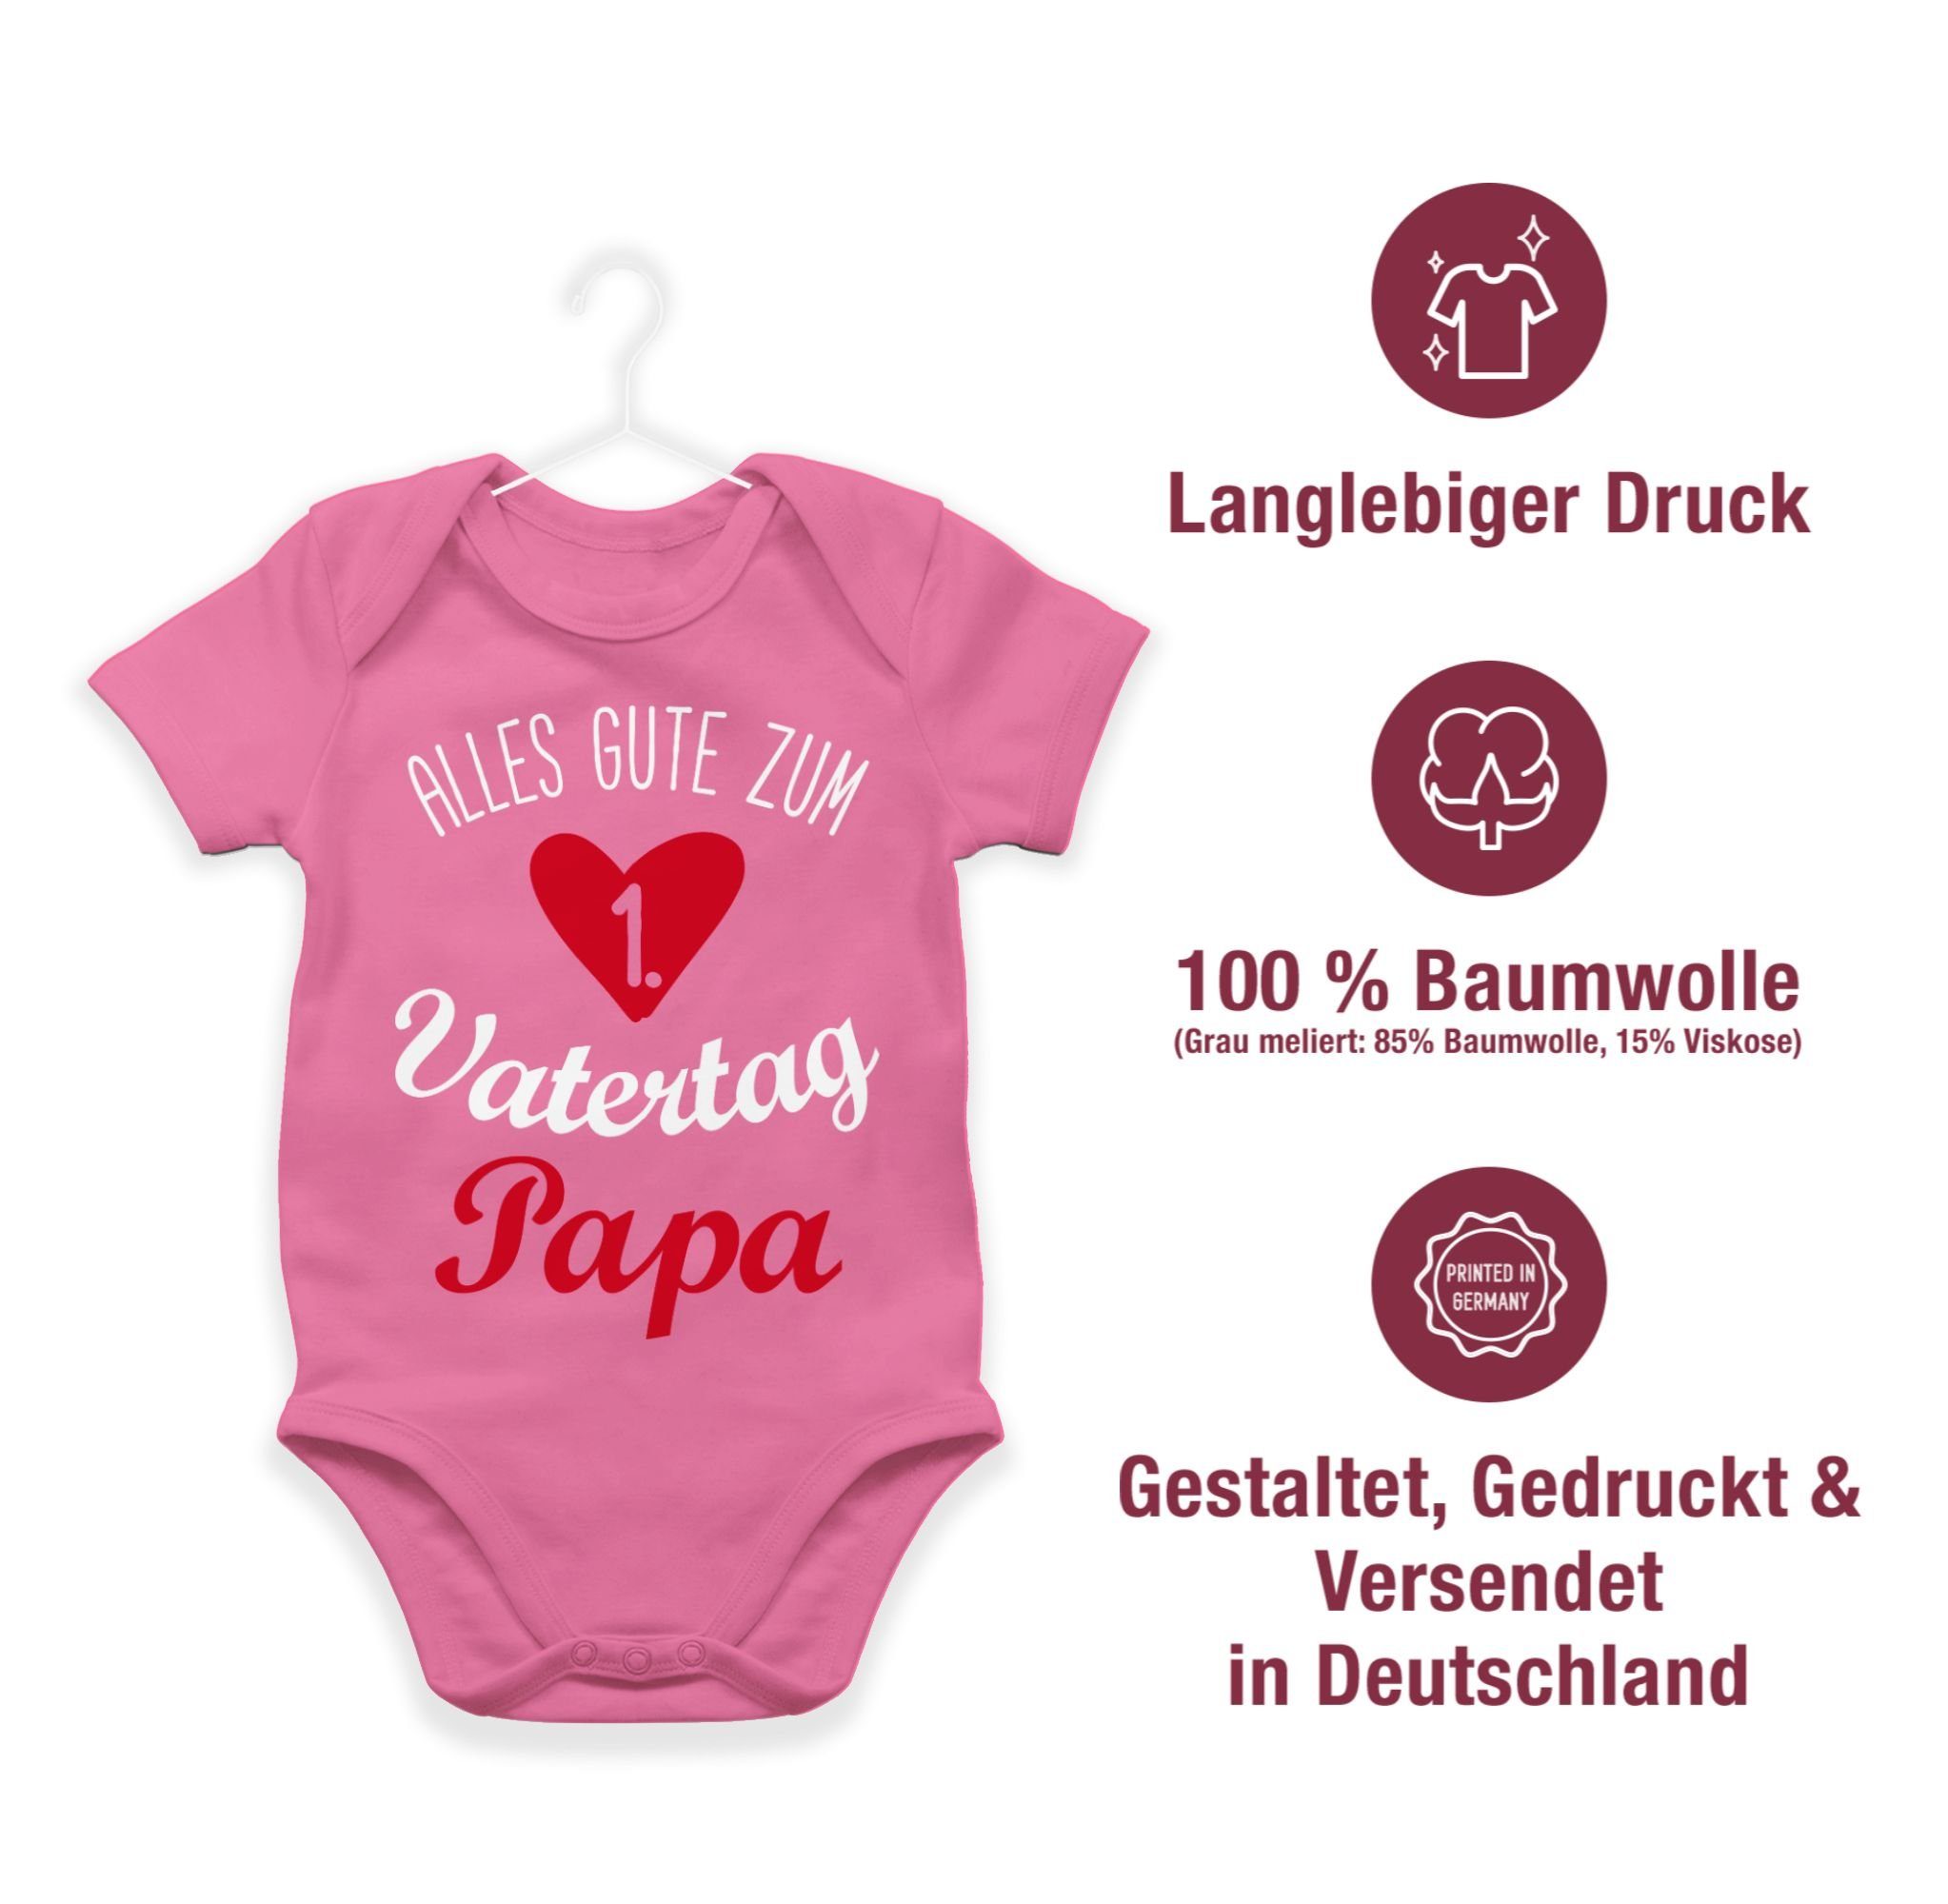 Shirtracer Shirtbody Alles 3 weiß gute Baby Pink Geschenk Vatertag zum ersten Vatertag